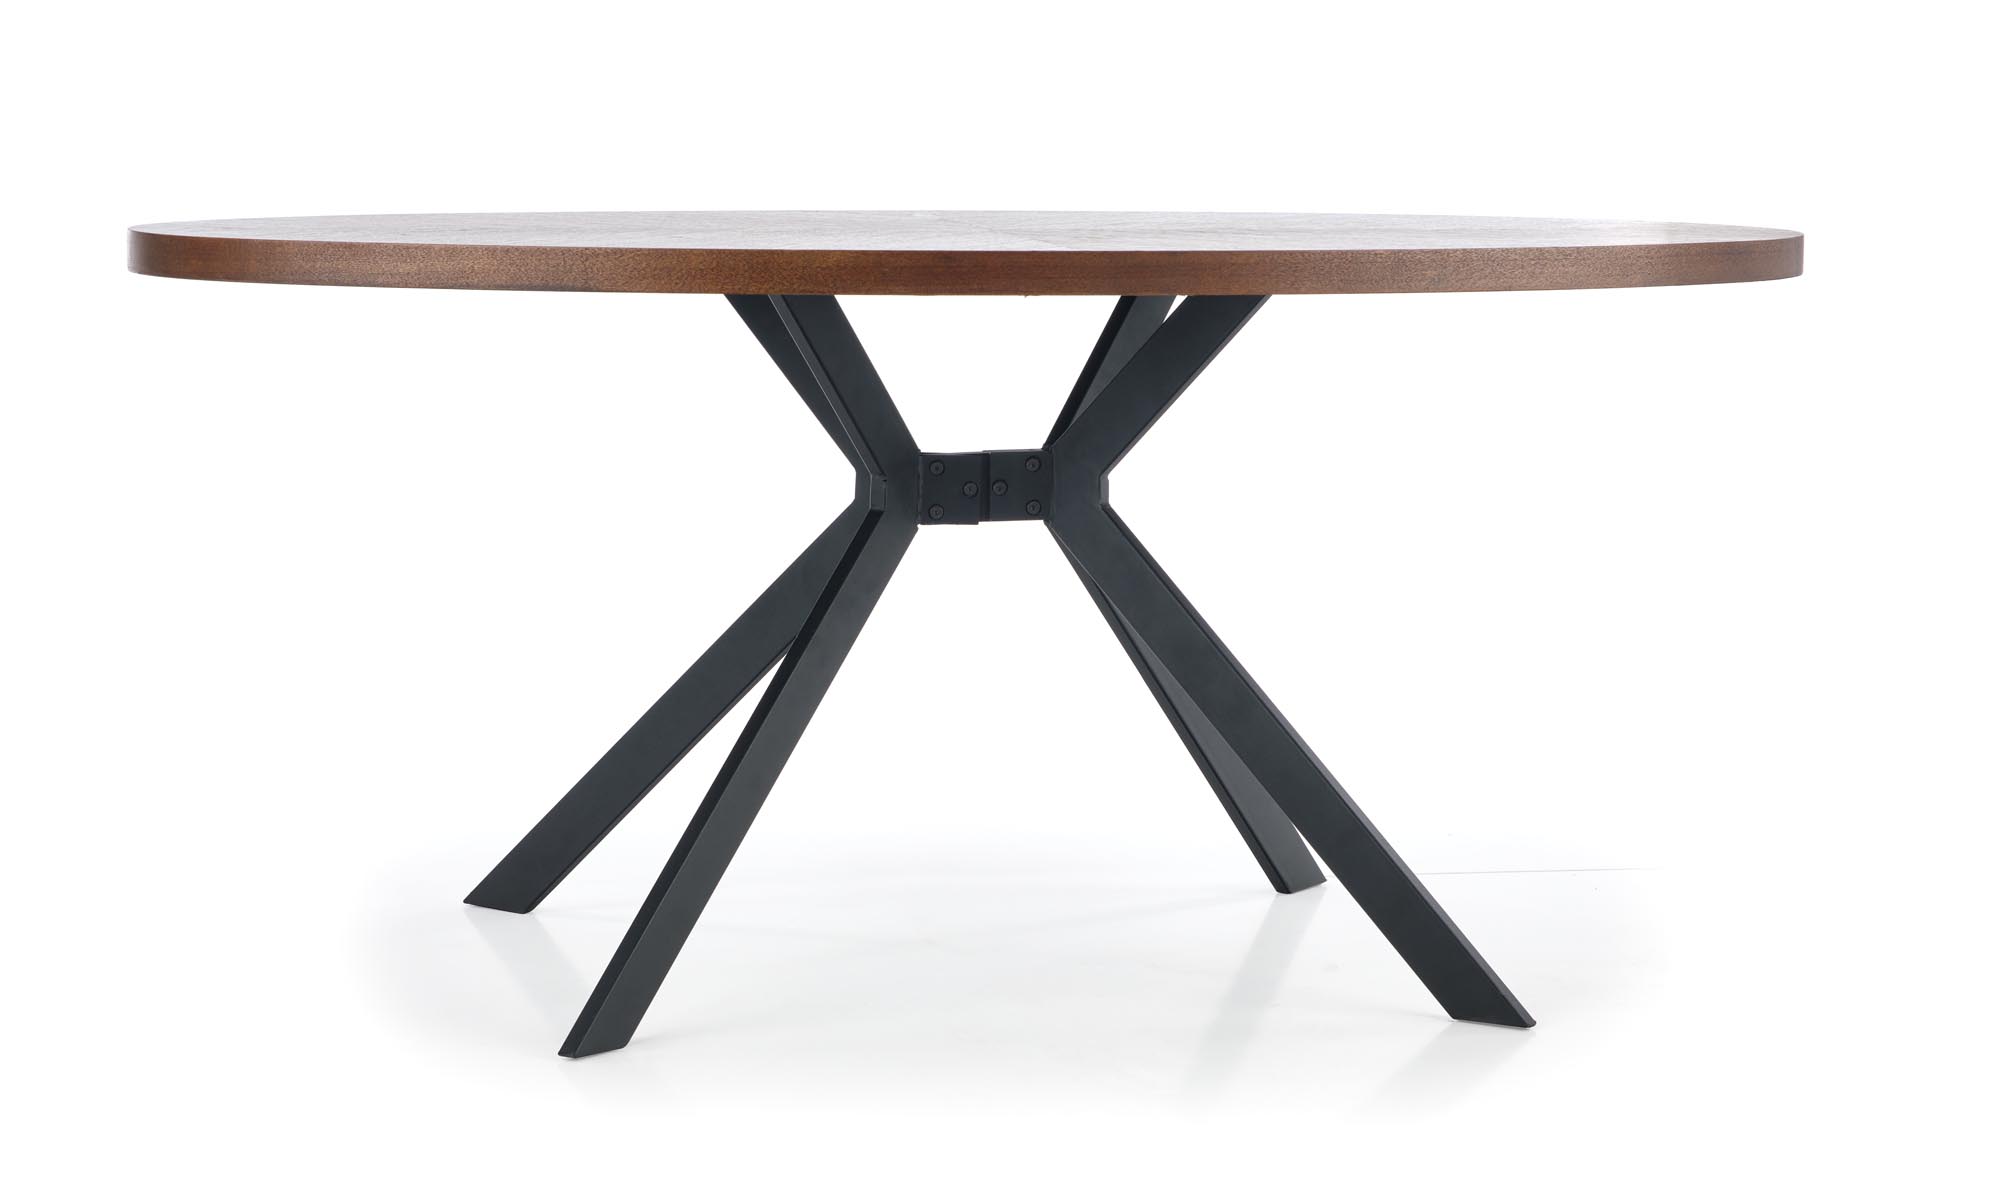 LOCARNO asztal, asztallap - diófa, láb - fekete  locarno stůl, Deska - ořechová, noha - Fekete